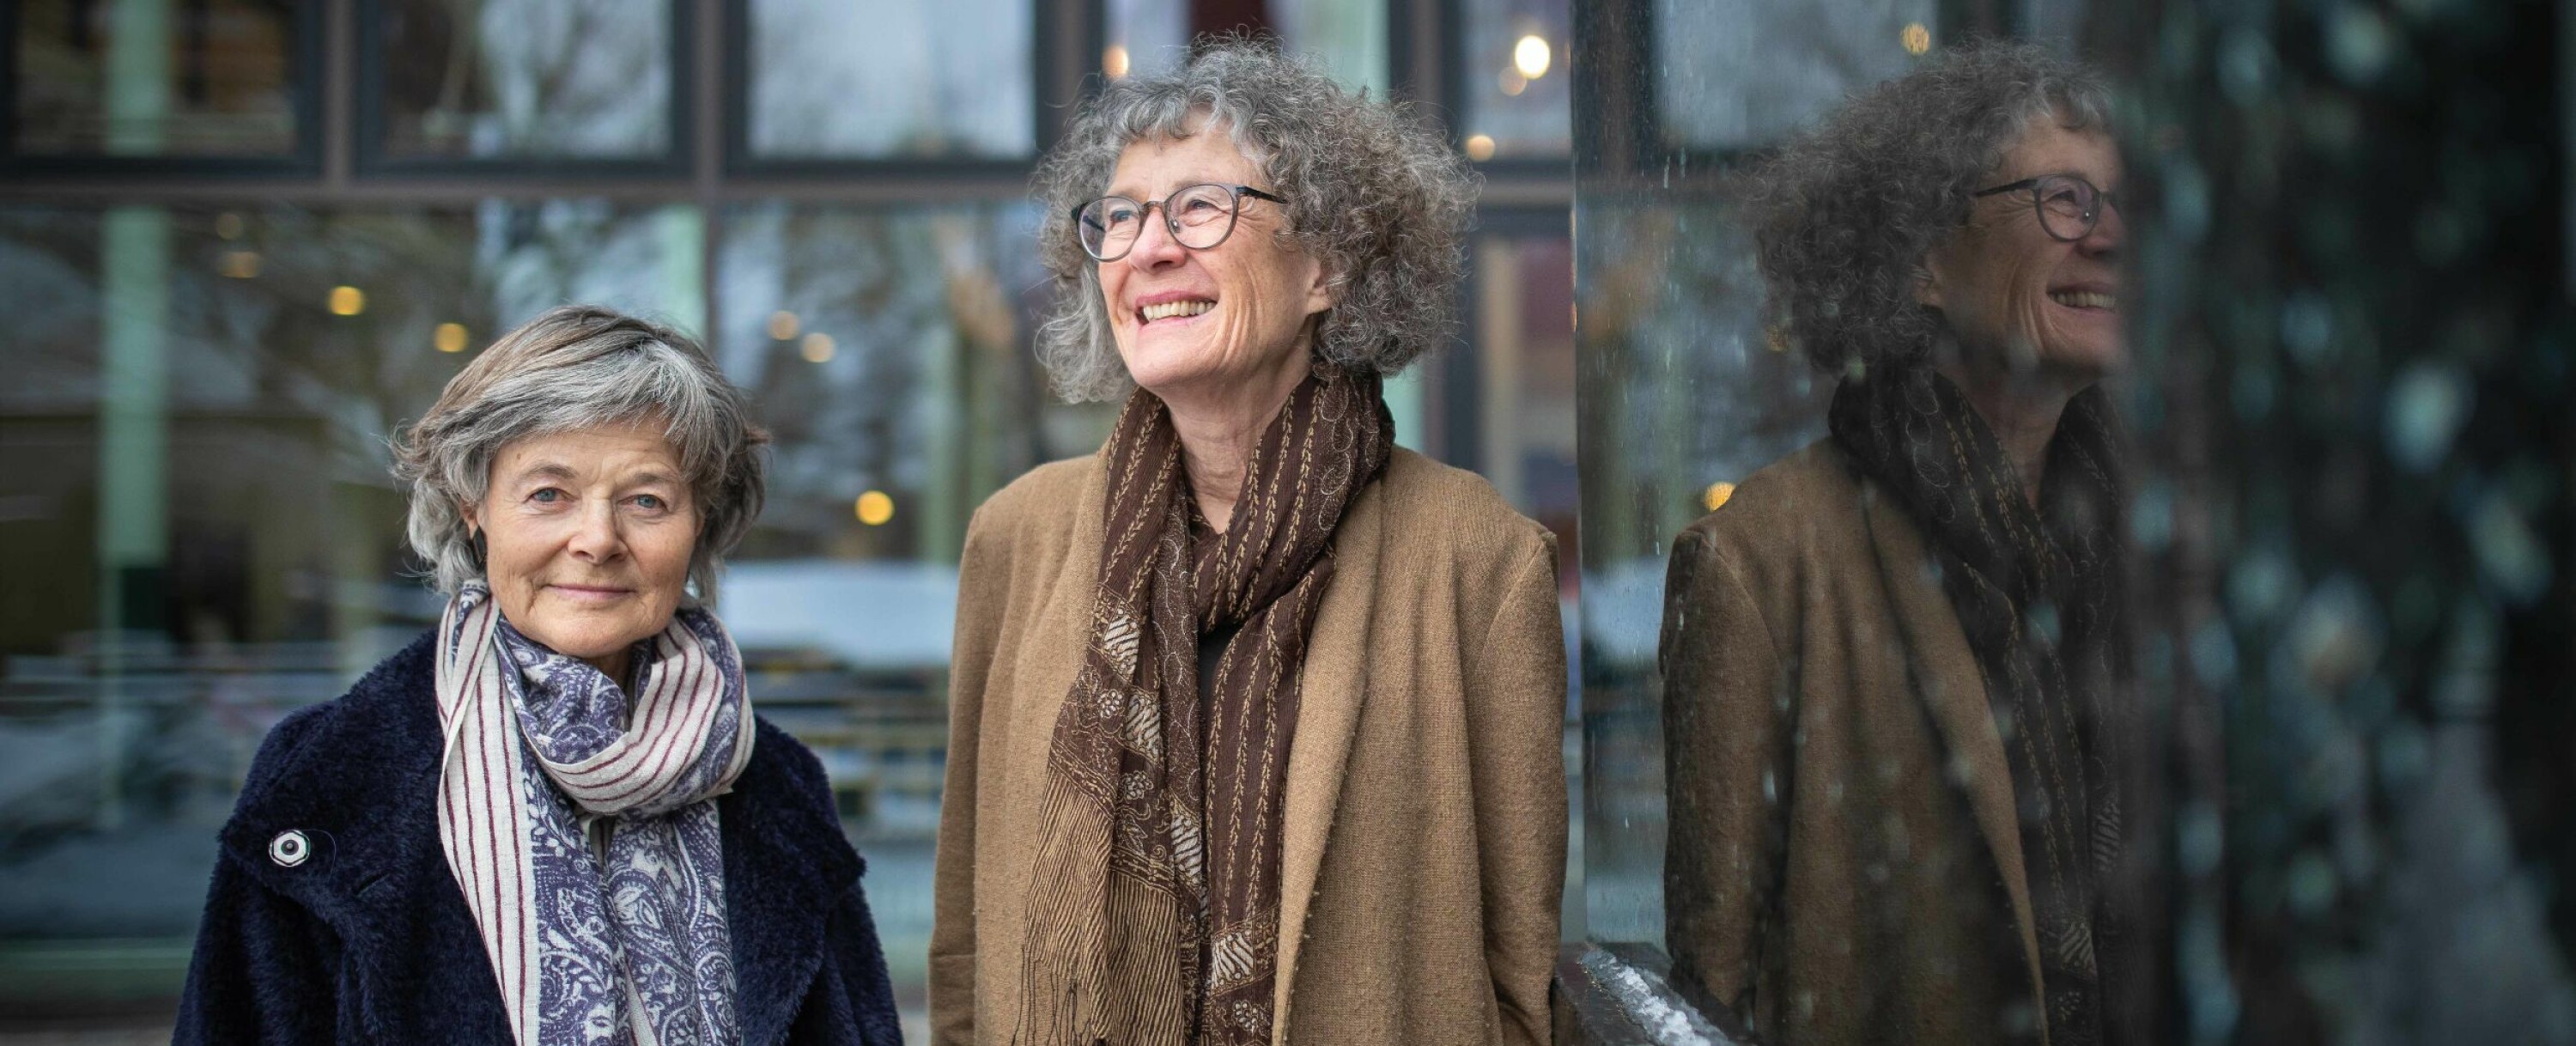 Anne-Brit Kolstø (t.v.) og Ragni Piene ble professorer i 1987 .— På noen måter hadde vi det kanskje lettere enn unge kvinner i dag, sier Piene. Foto: Siri Øverland Eriksen